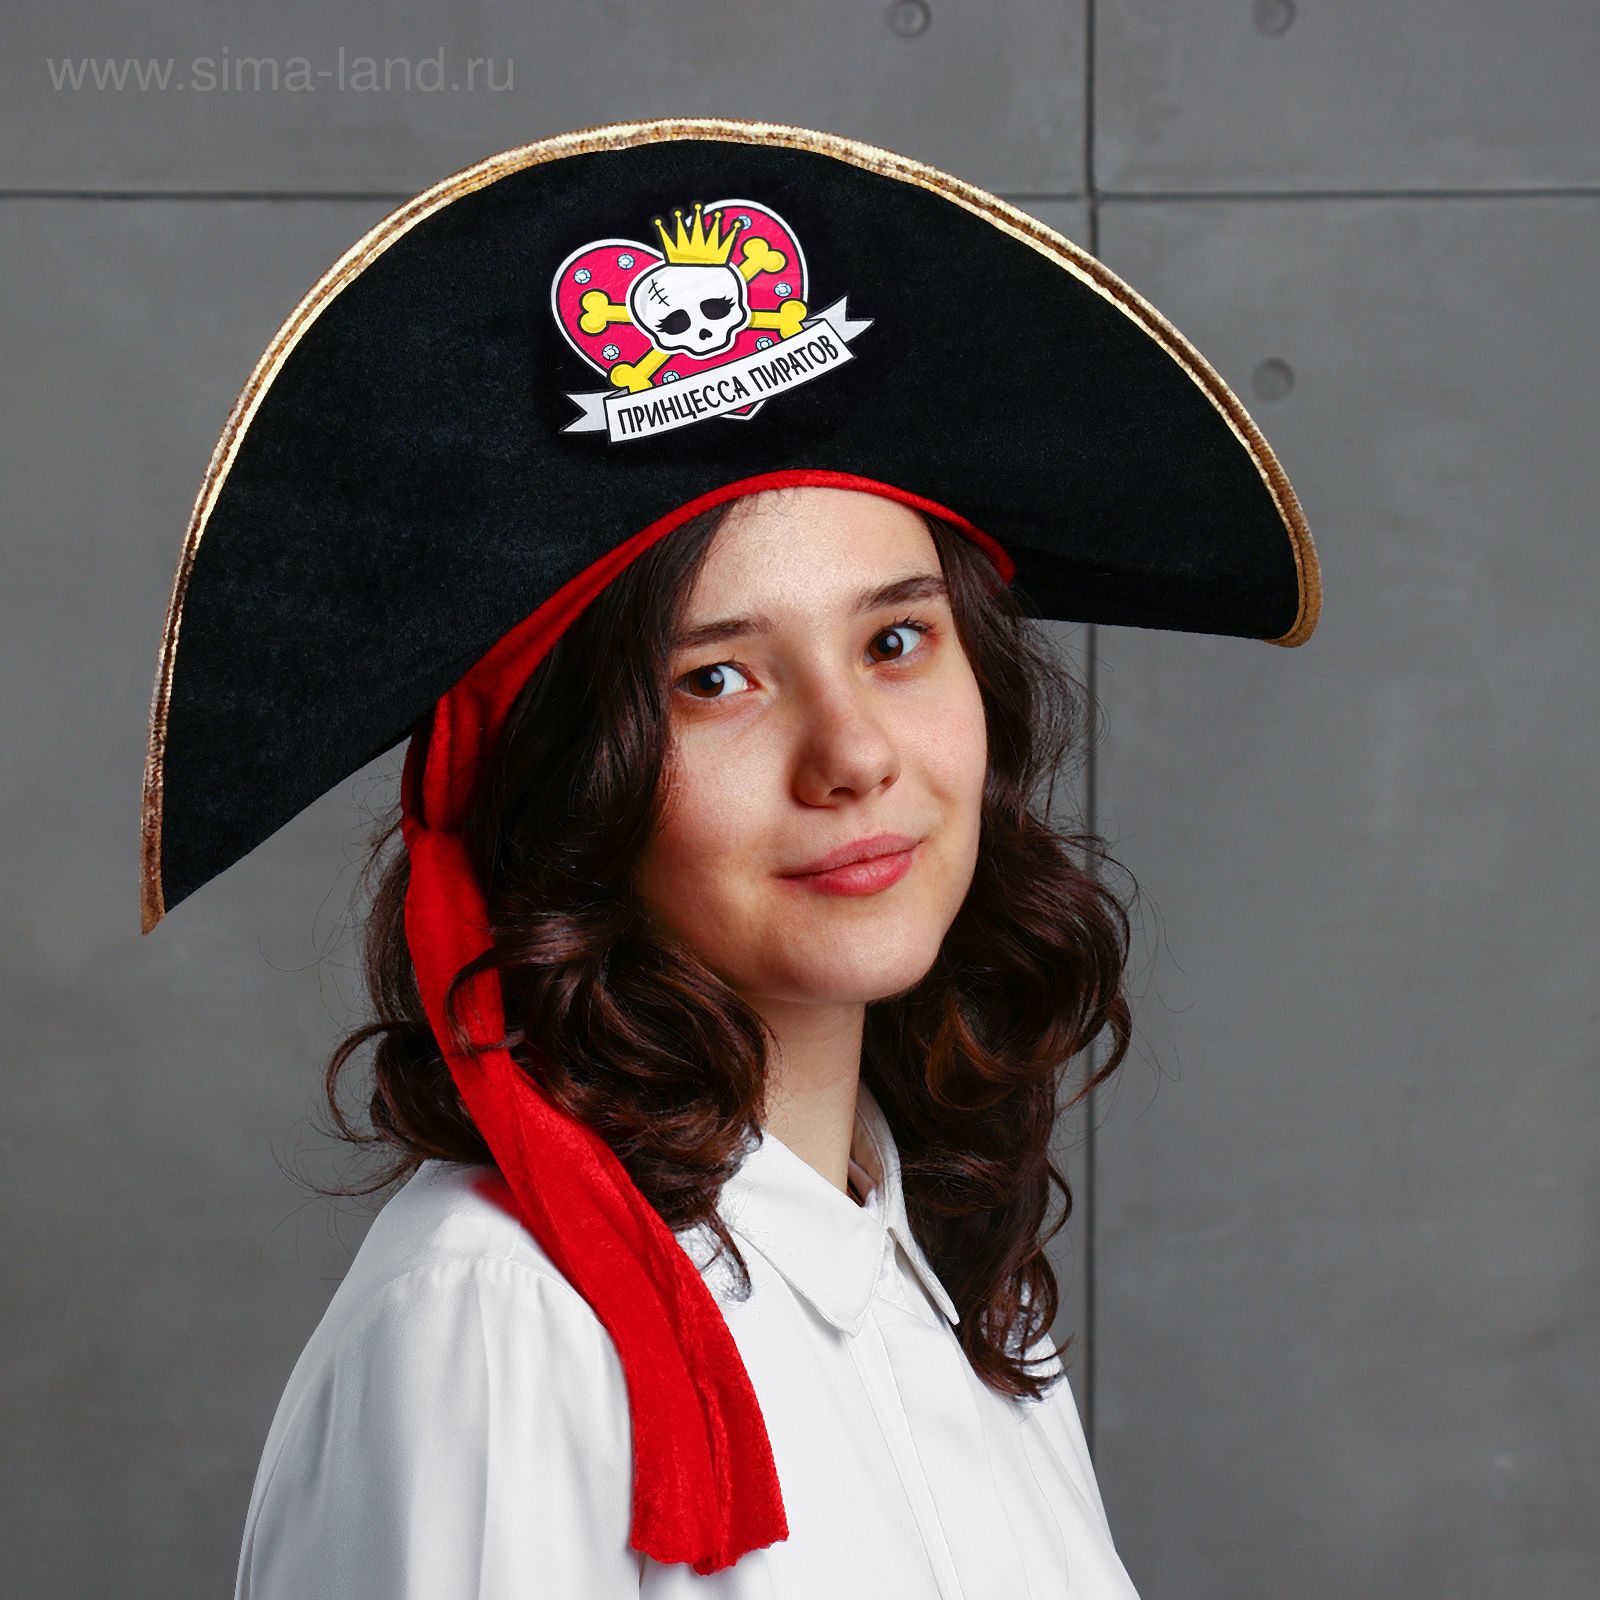 Шляпа пирата. Шляпа пирата настоящая Королева пиратов. Шляпа пирата, треуголка. Шляпа Пиратская «настоящий пират», детская, р-р. 52-54 . 2226396. Пиратский шлюп.